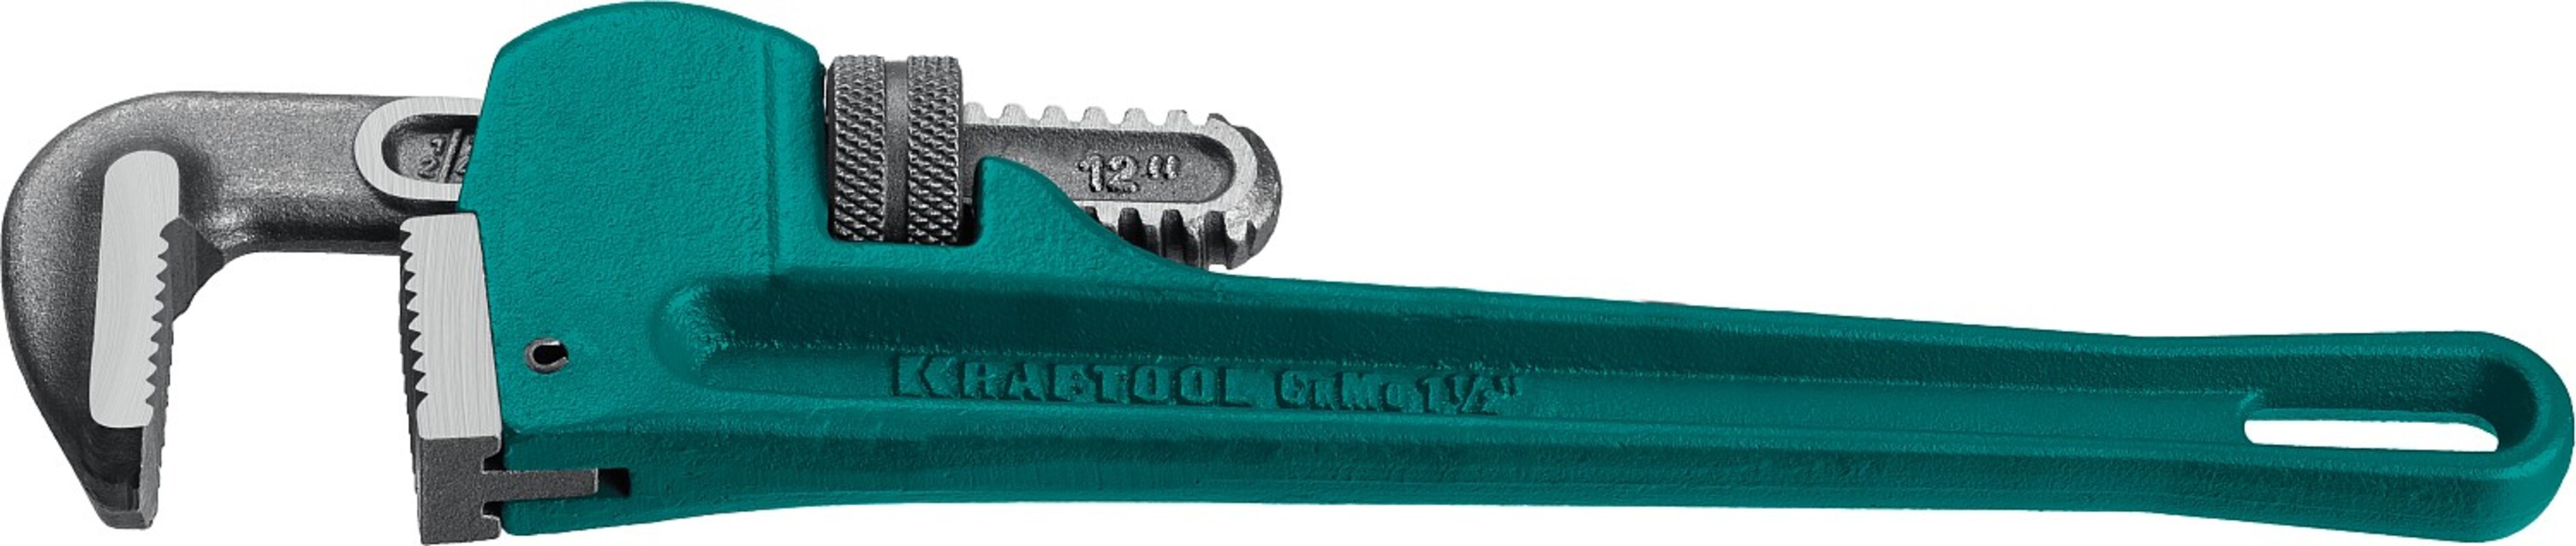 Ключ трубный газовый стиллсона градусов  2727-30 1 дюйм 280 мм .